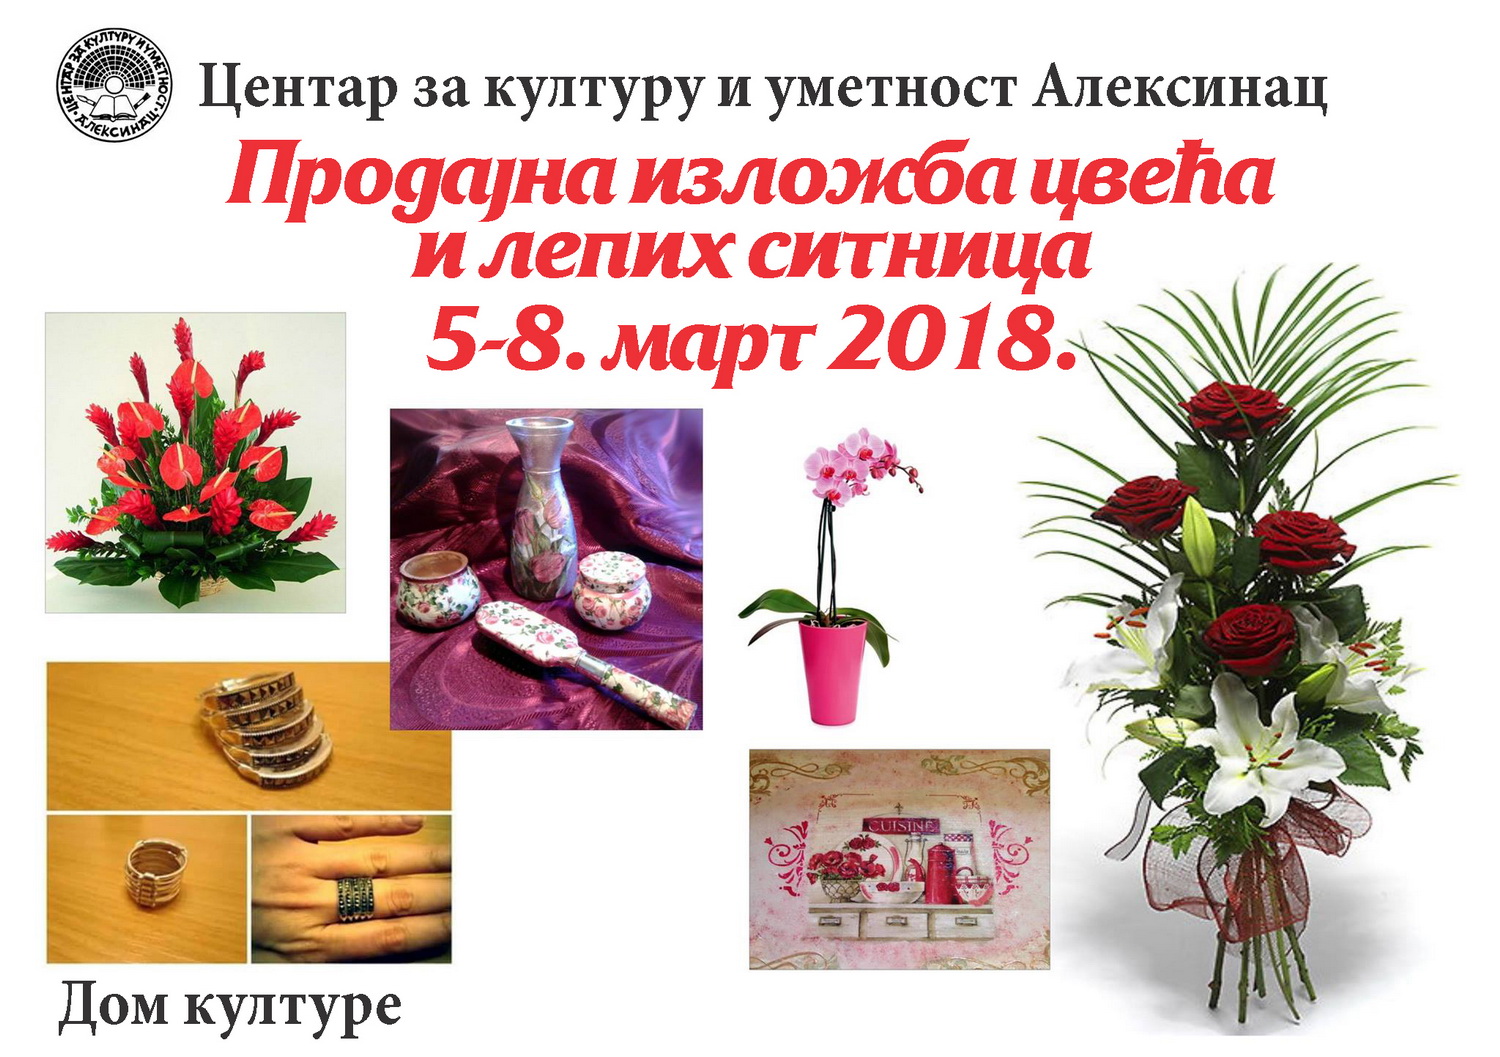 Продајна изложба цвећа и лепих ситница <br>5-8. март 2018.